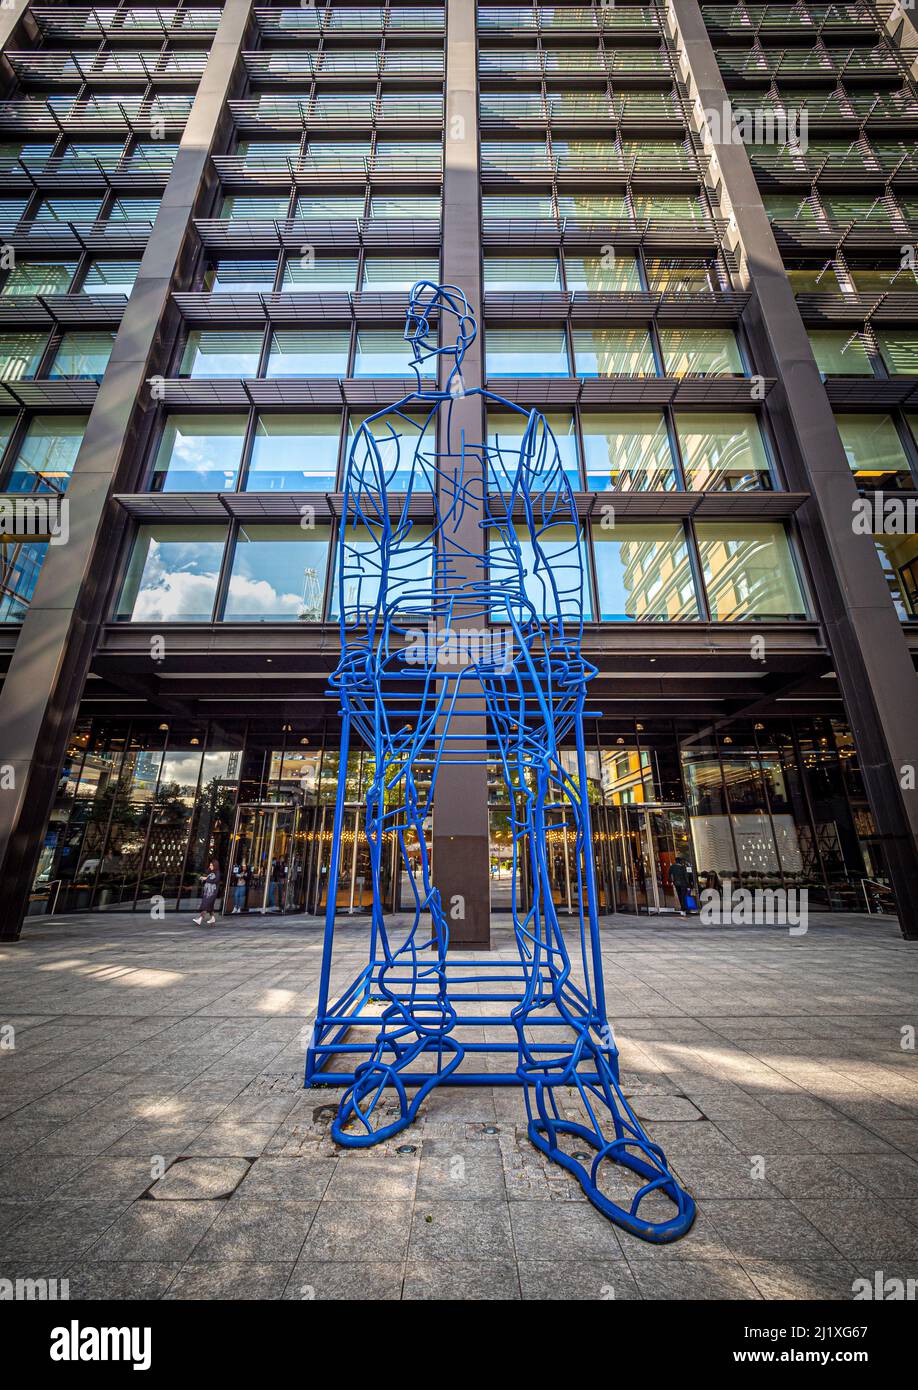 In attesa: Ultramarinara scultura in acciaio blu su larga scala di un uomo situato nella piazza del Principal Place. Londra. REGNO UNITO Foto Stock